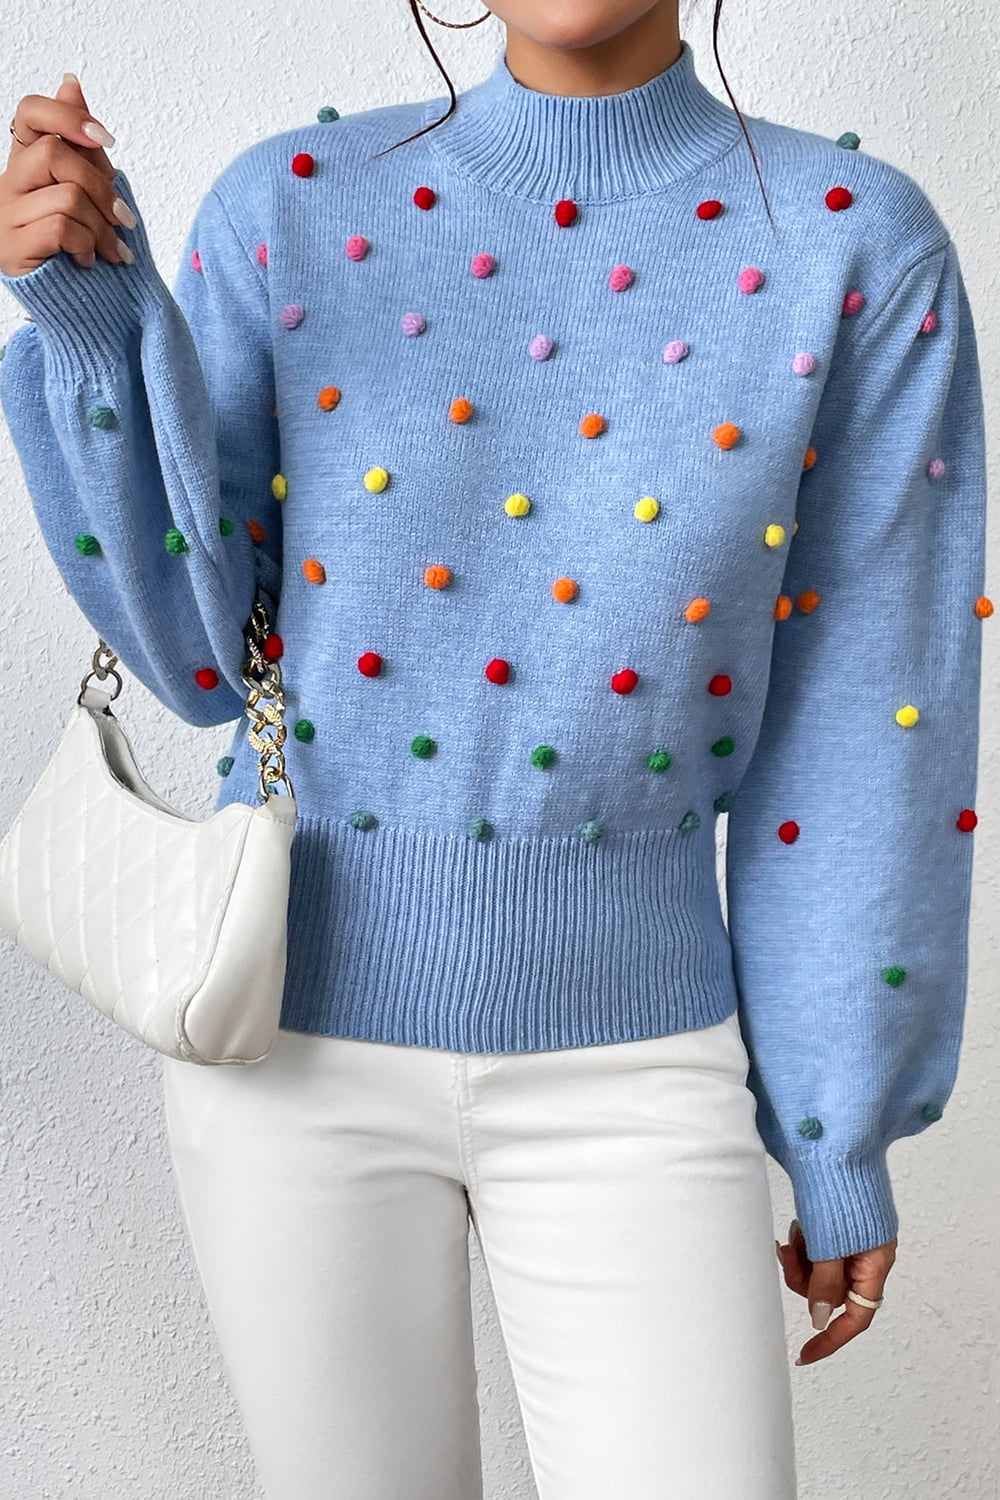 Tamira Pom-Pom Pullover Sweater - Kinsley & Harlow